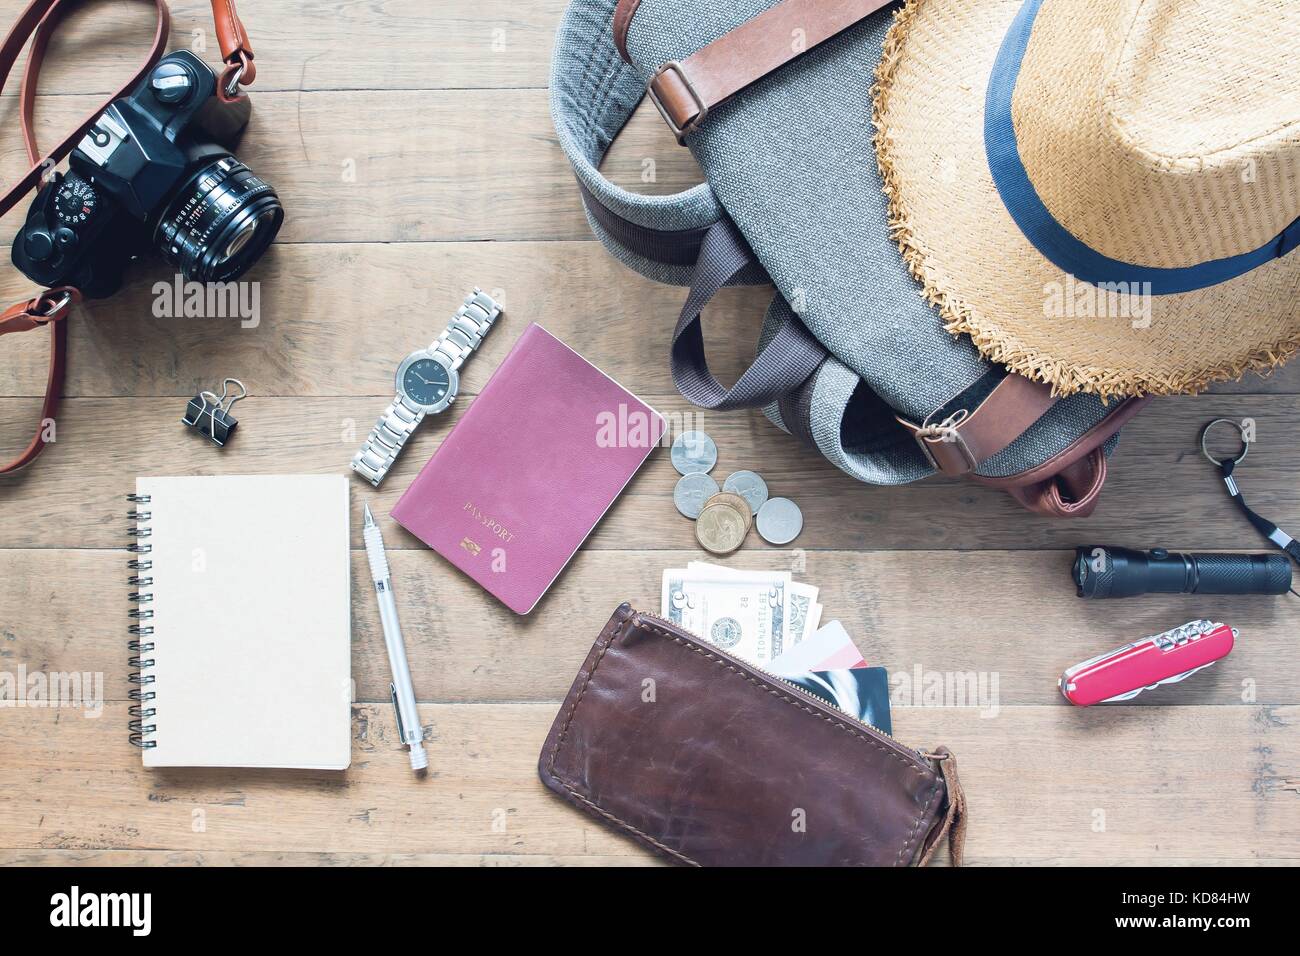 Vista aerea dell'uomo accessori, articoli di viaggiatori su sfondo di legno. concetto di viaggio Foto Stock